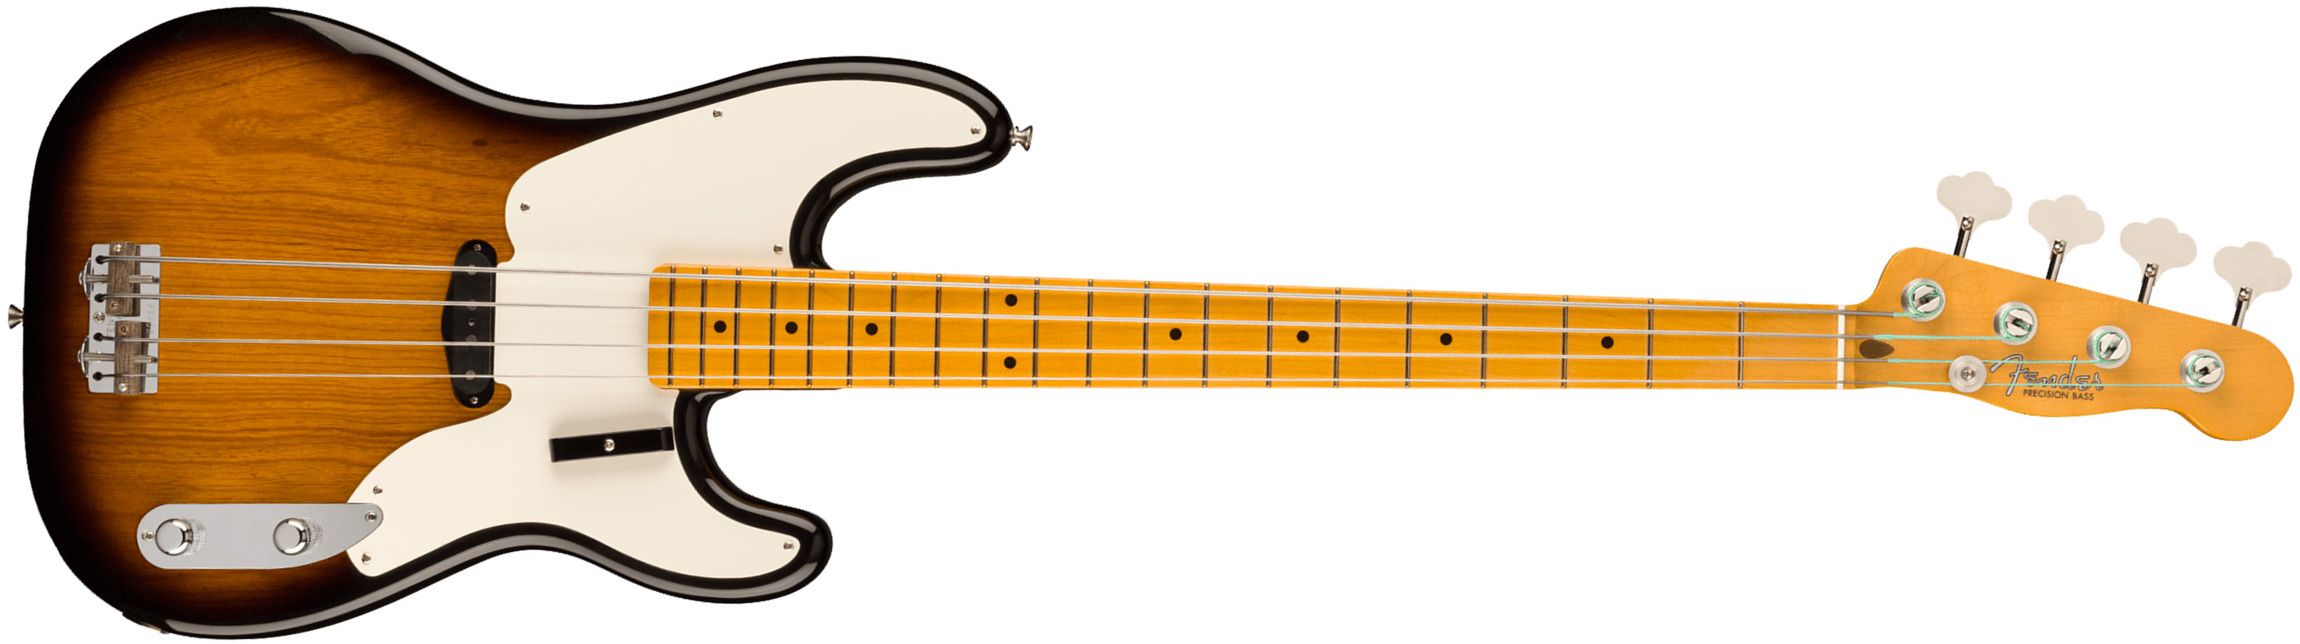 Fender Precision Bass 1954 American Vintage Ii Usa Mn - 2-color Sunburst - Bajo eléctrico de cuerpo sólido - Main picture